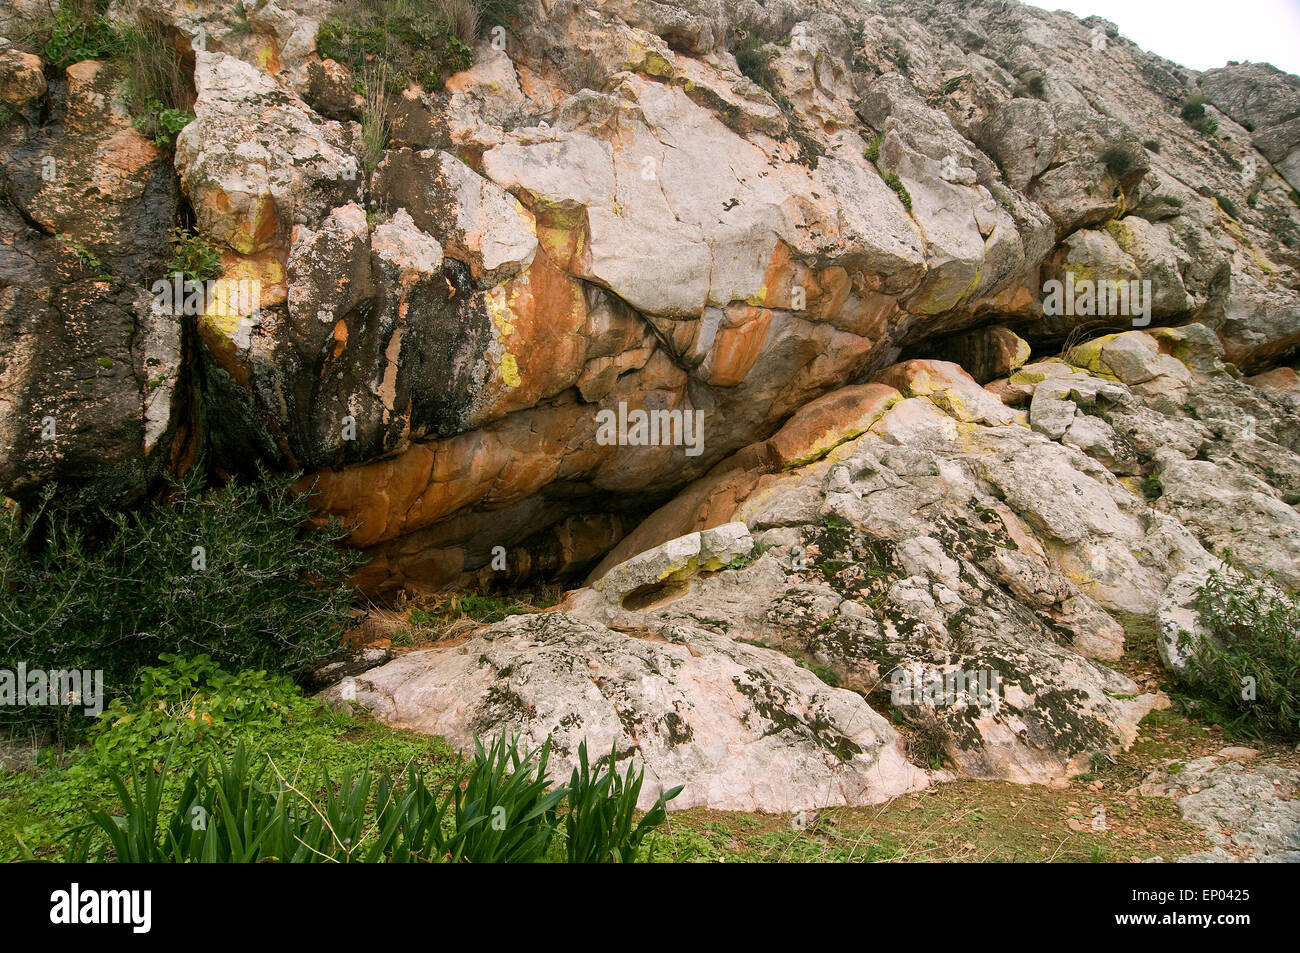 Rocky formations, Metamorphic quartzite, Paleozoic era, Ordovician period, Arroyo San Servan, Badajoz, Extremadura, Spain Europe Stock Photo